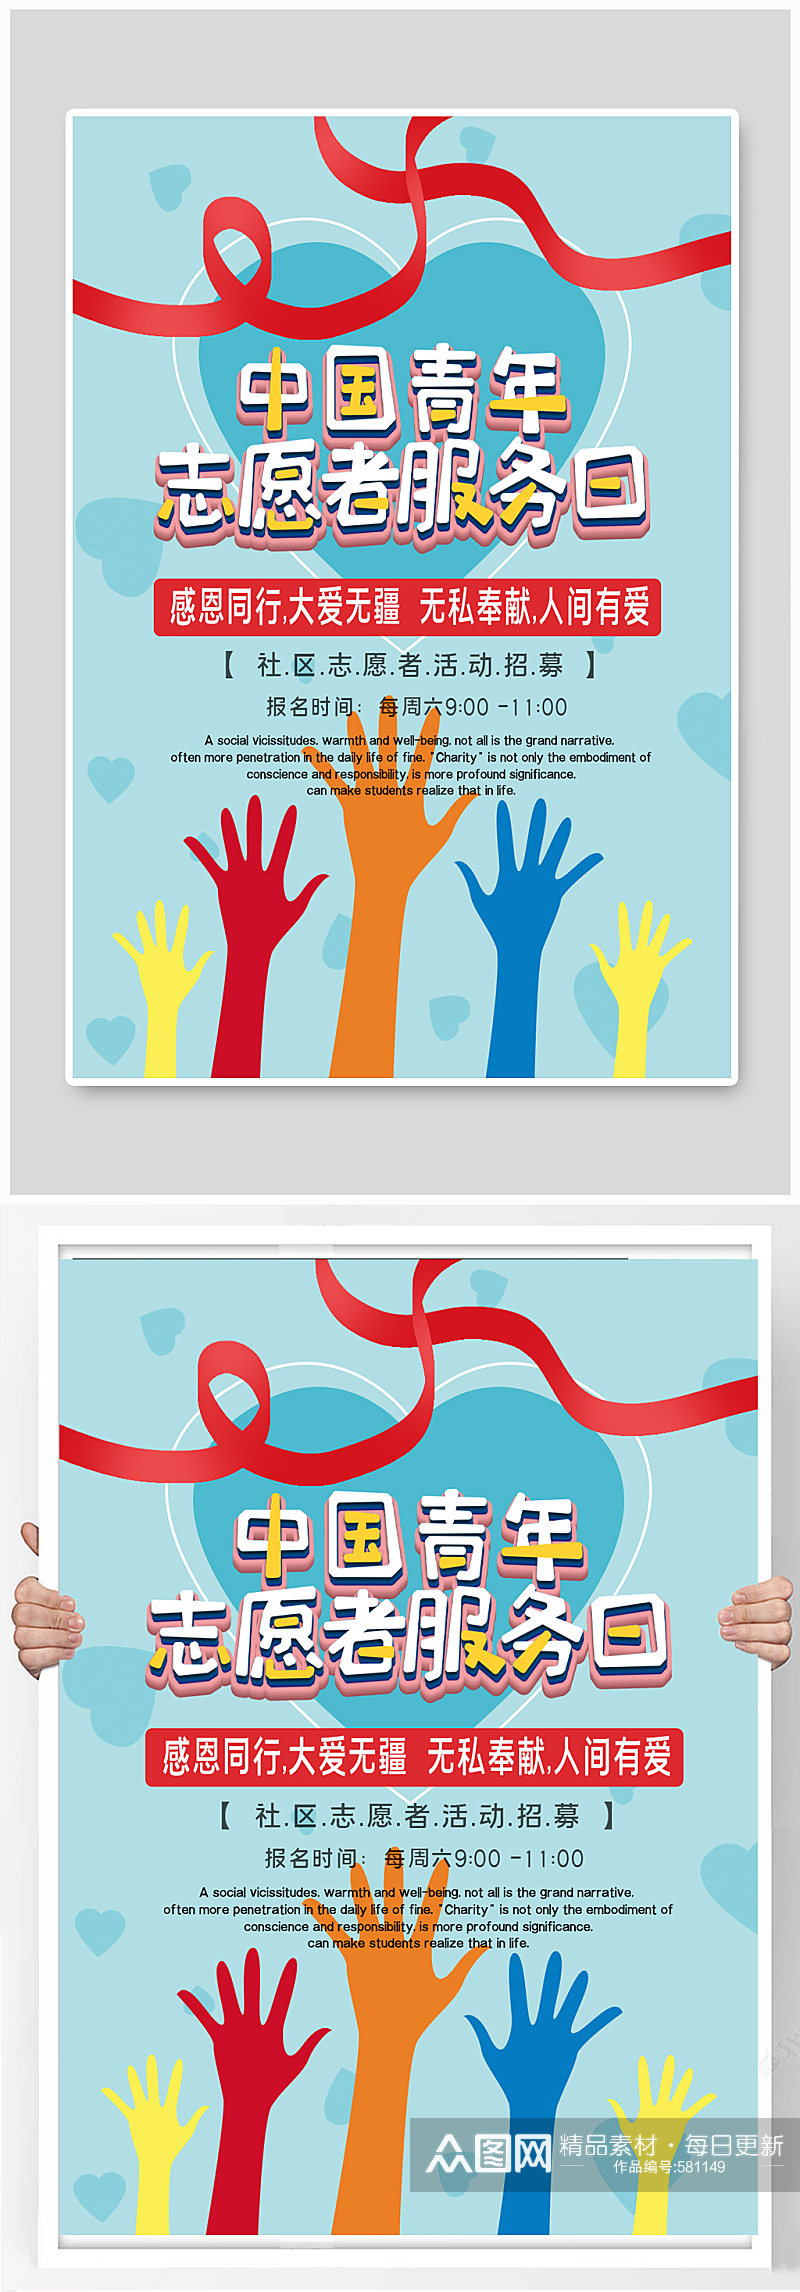 中国青年志愿者服务日 青年志愿者公益宣传海报素材